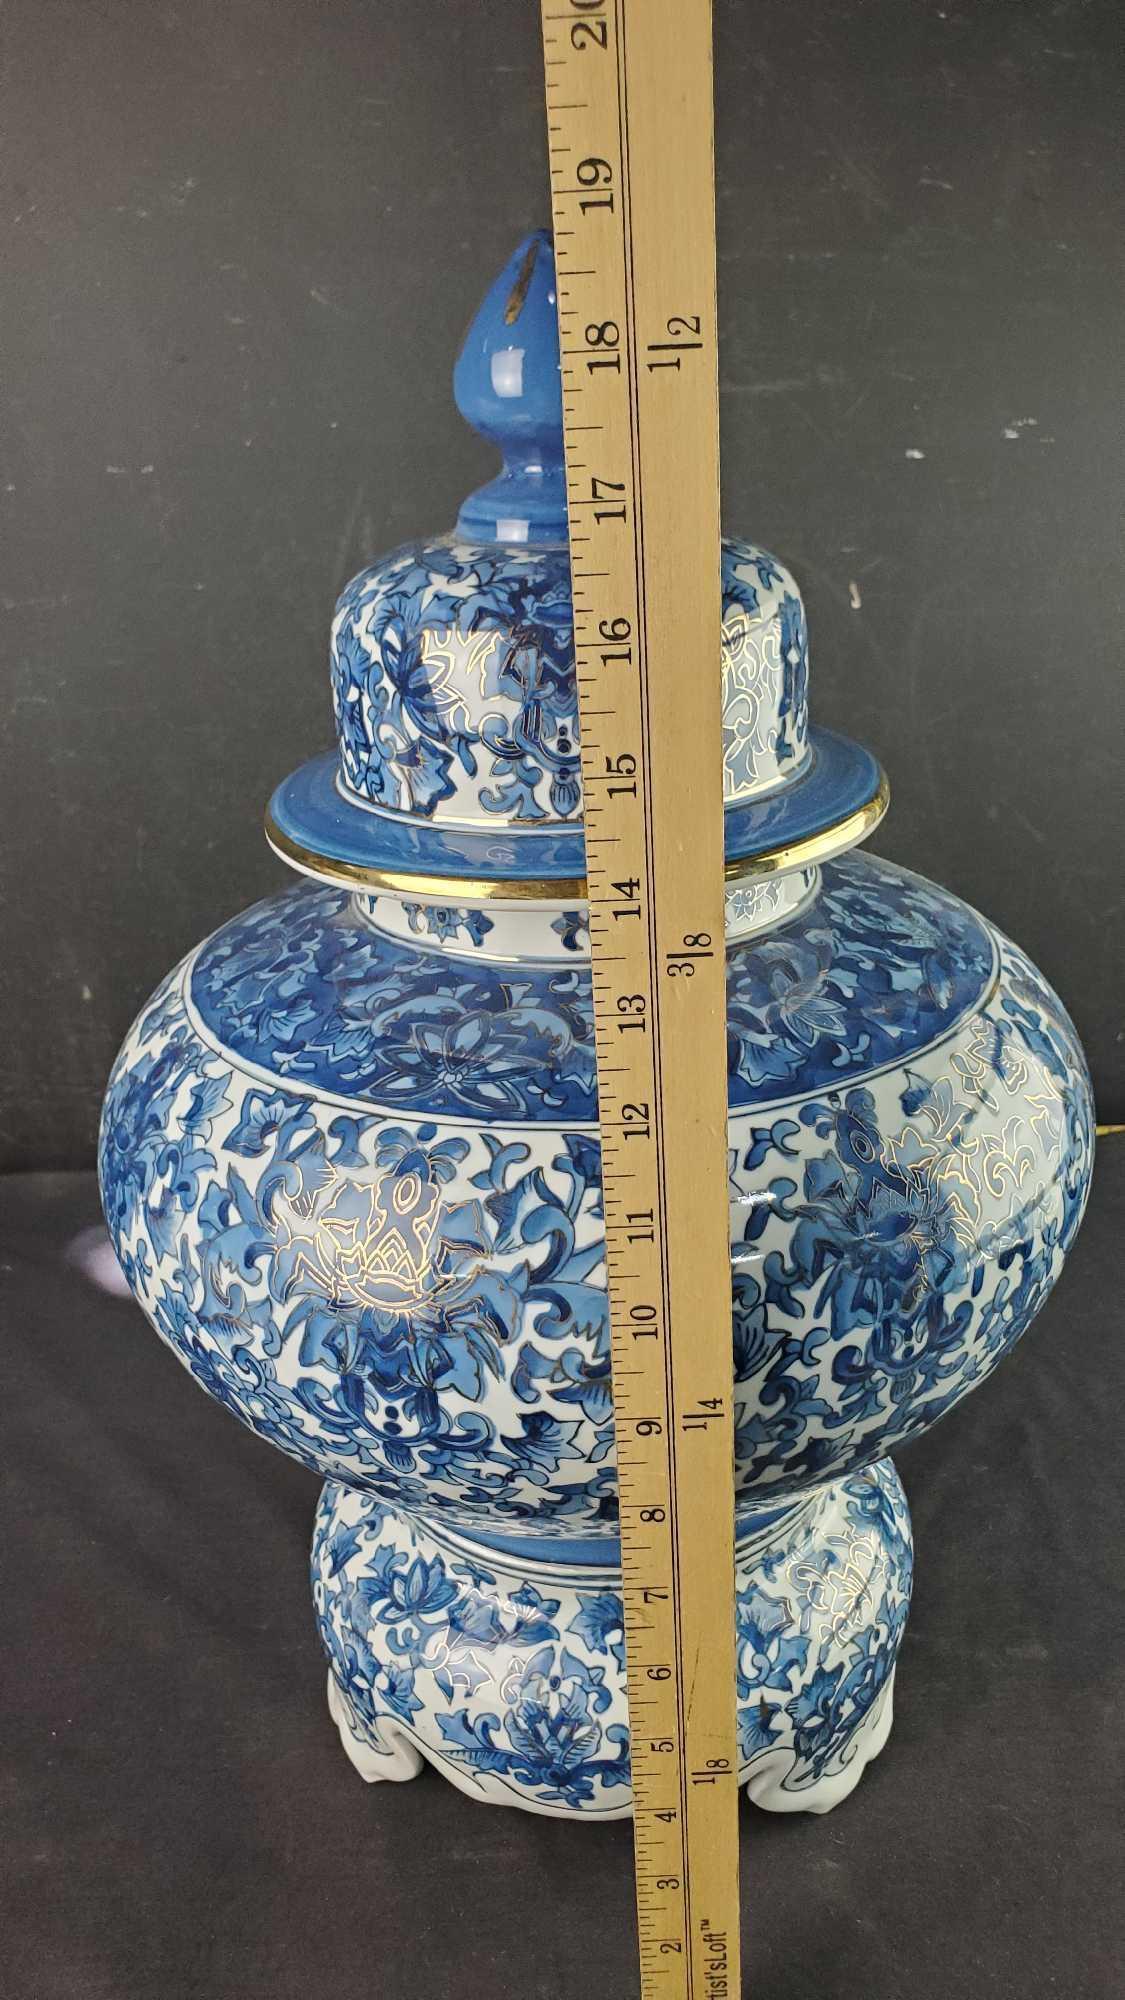 Large porcelain temple jar with pedestal